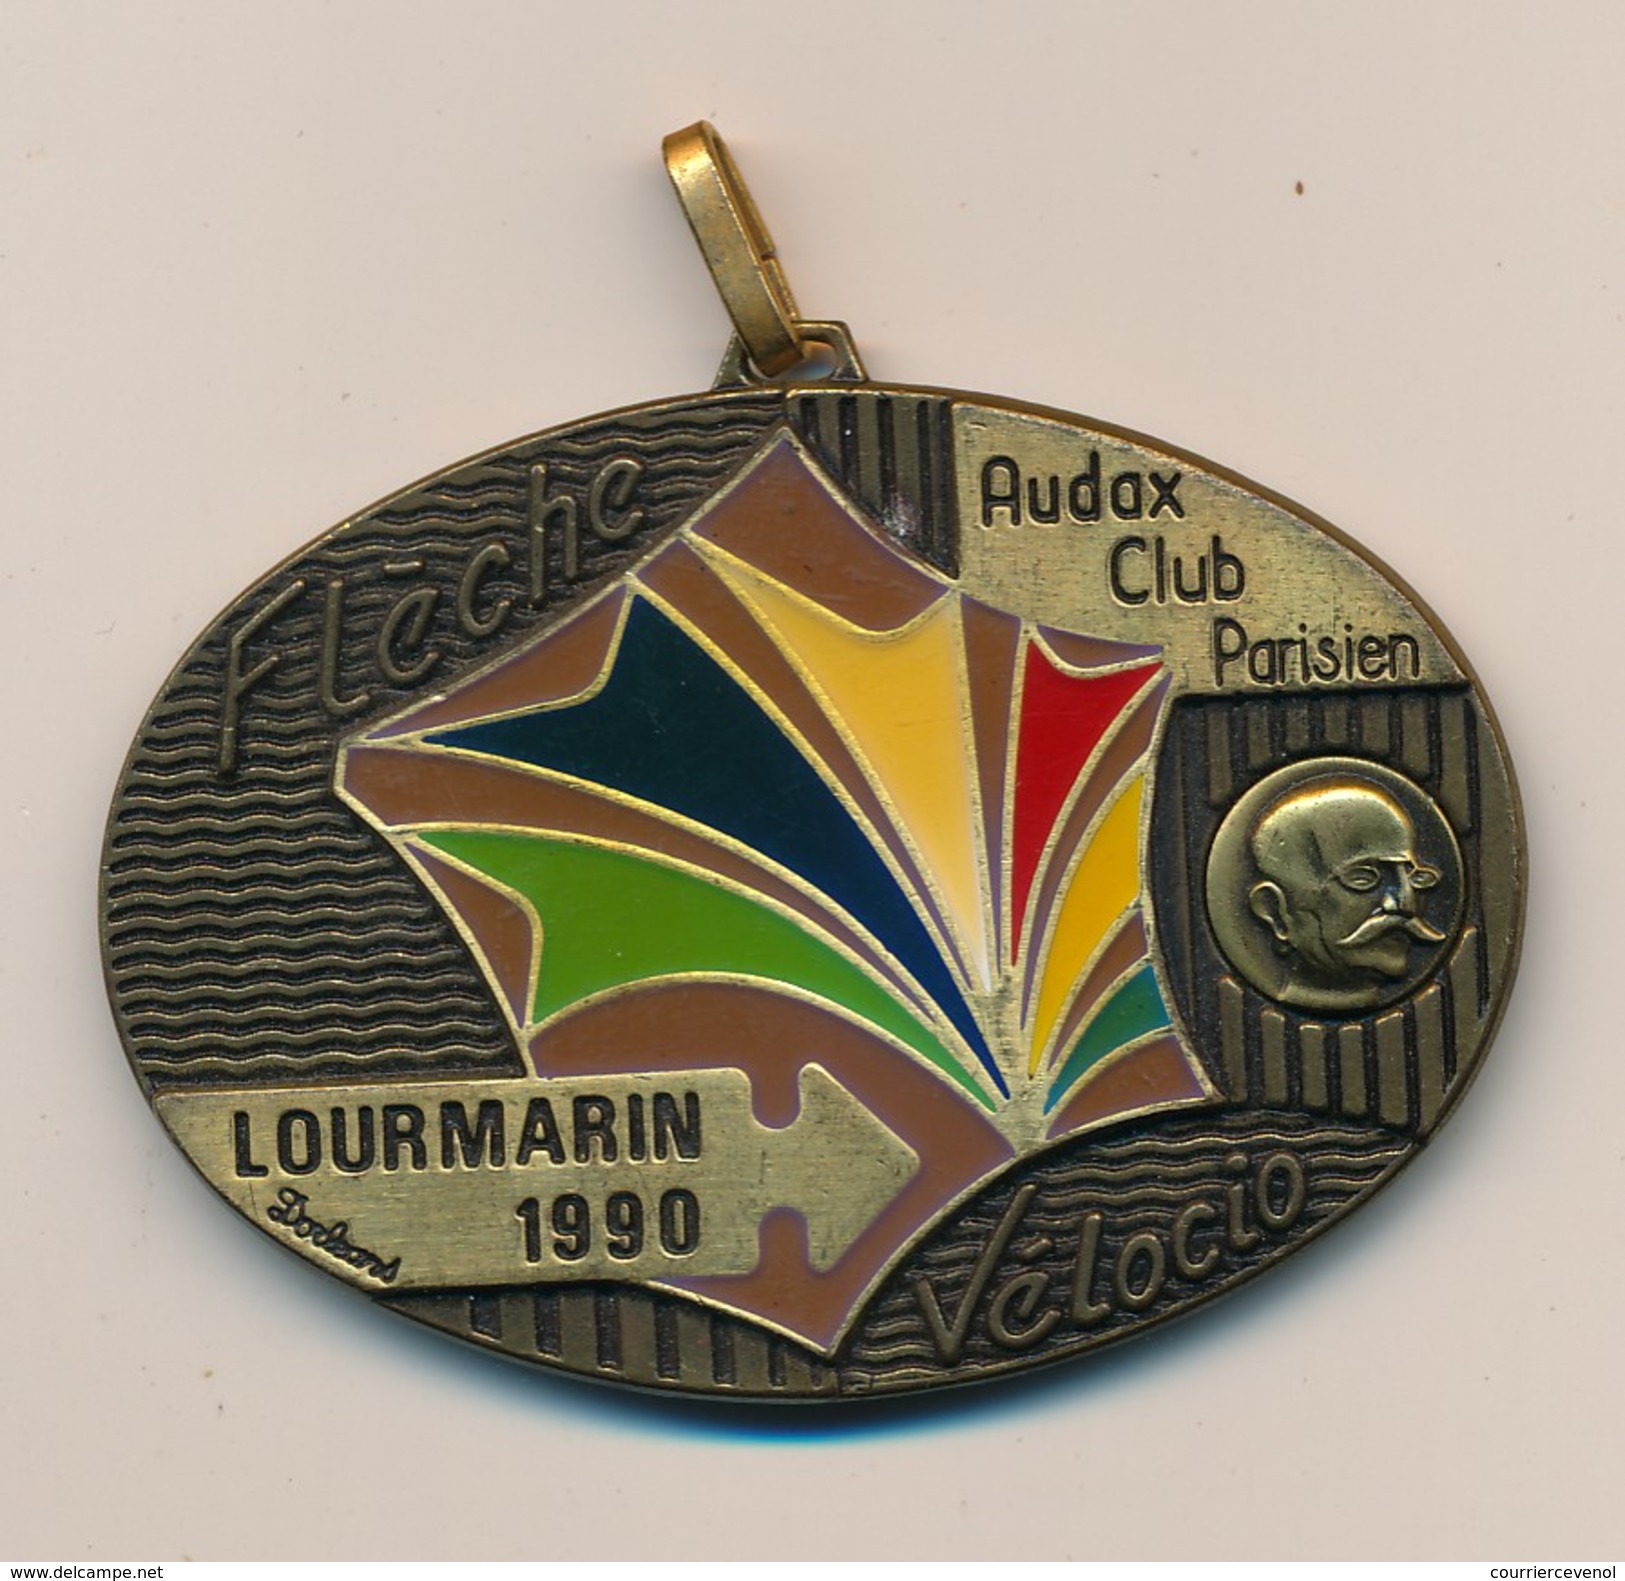 Médaille "Flèche Vélocio - Lourmarin 1990" - AUDAX CLUB PARISIEN - (Cyclotourisme) - Cycling